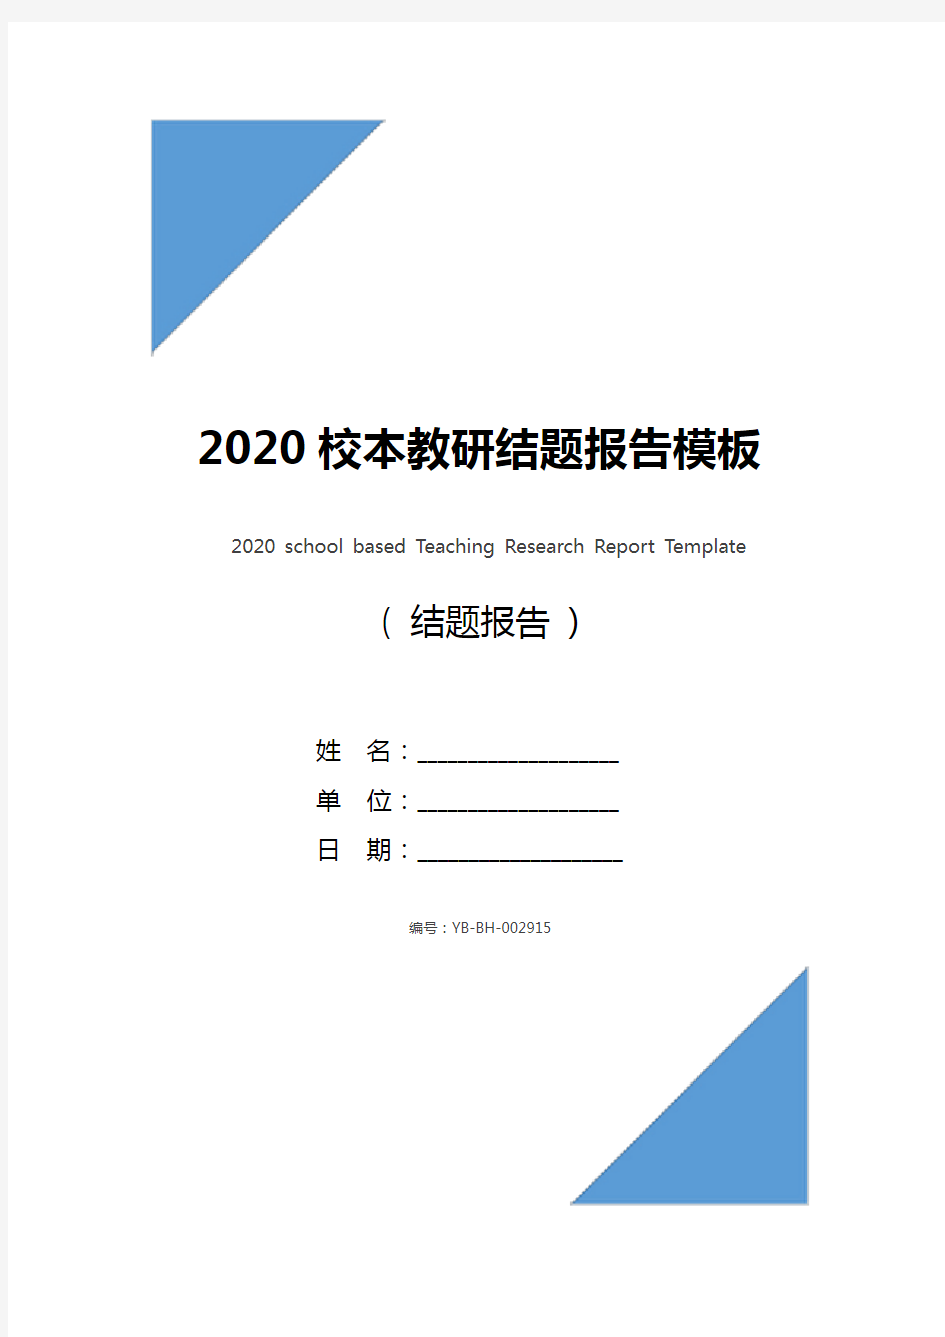 2020校本教研结题报告模板_1